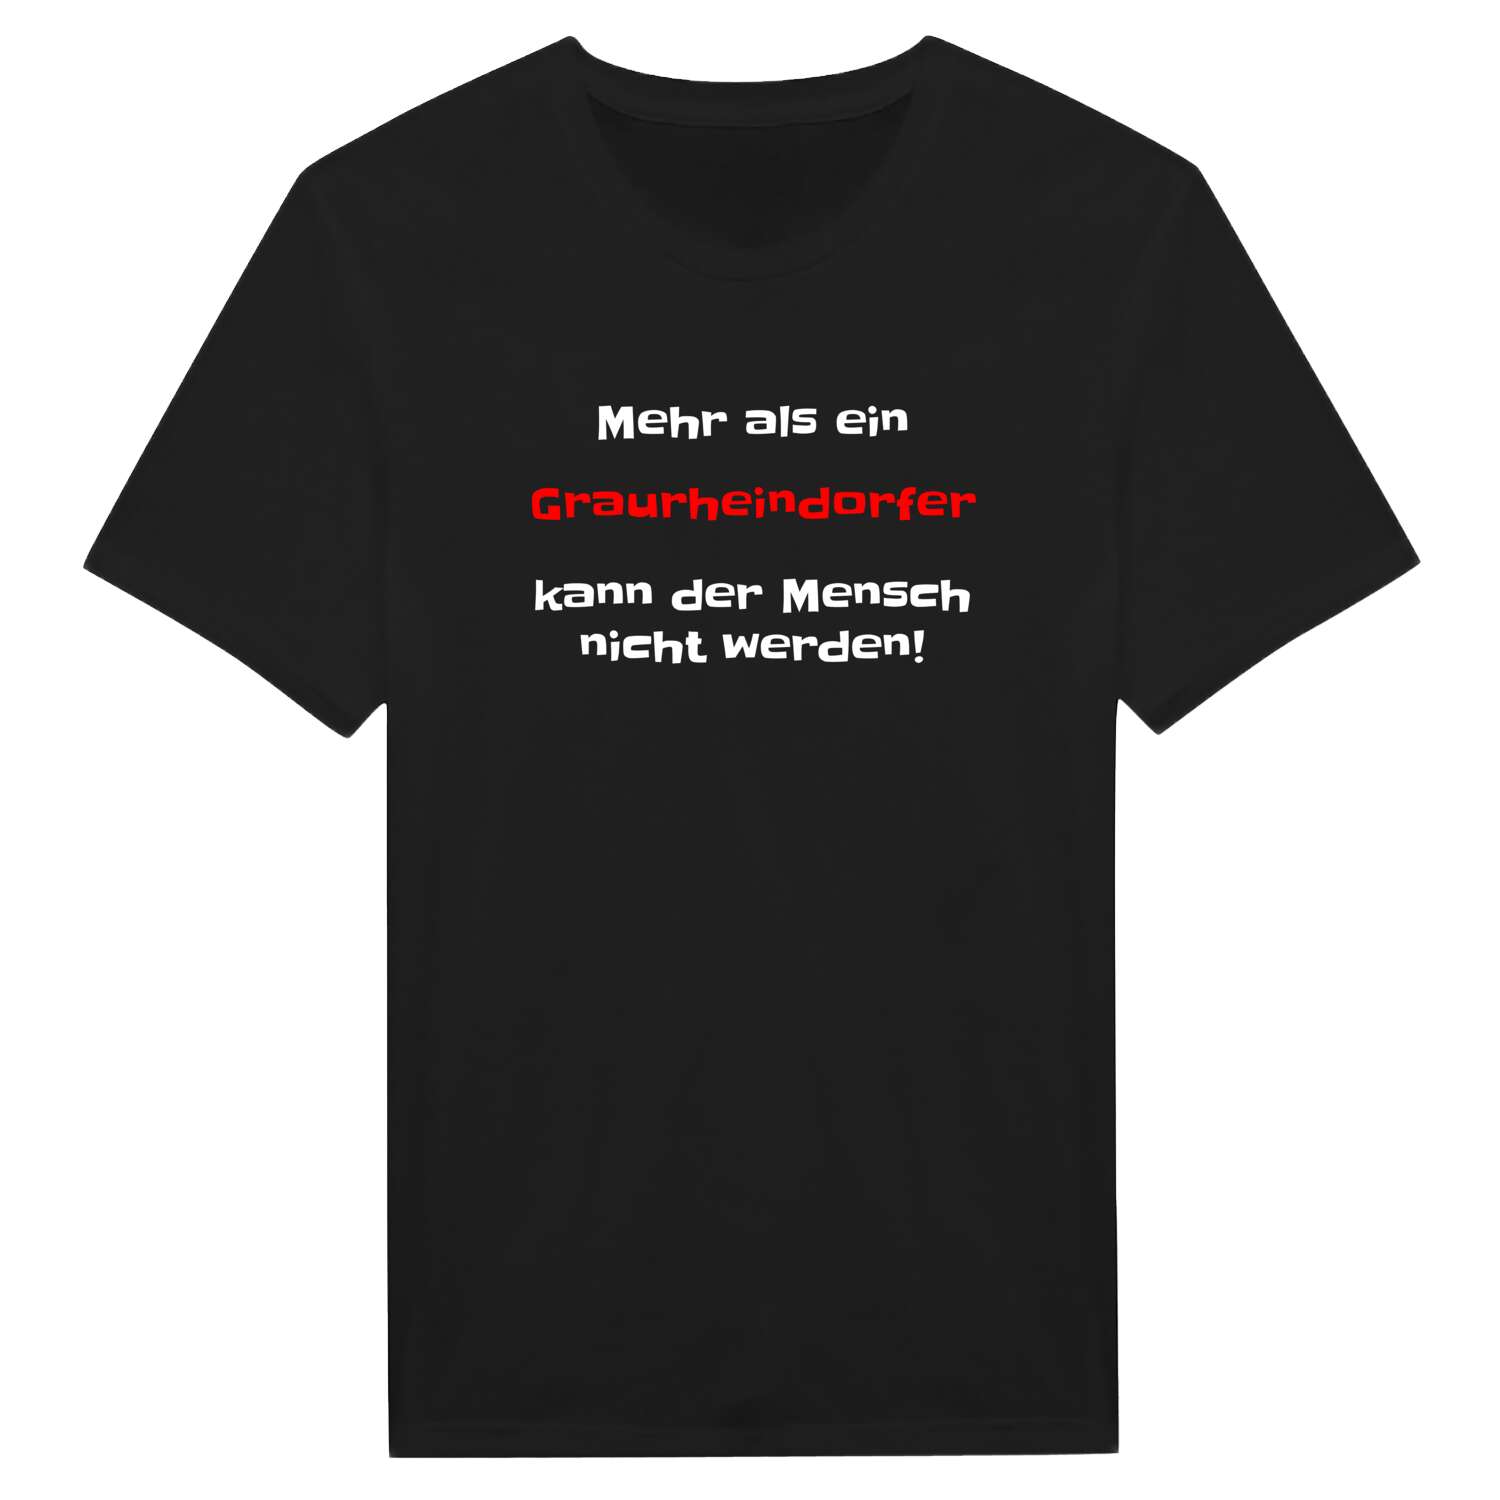 Graurheindorf T-Shirt »Mehr als ein«